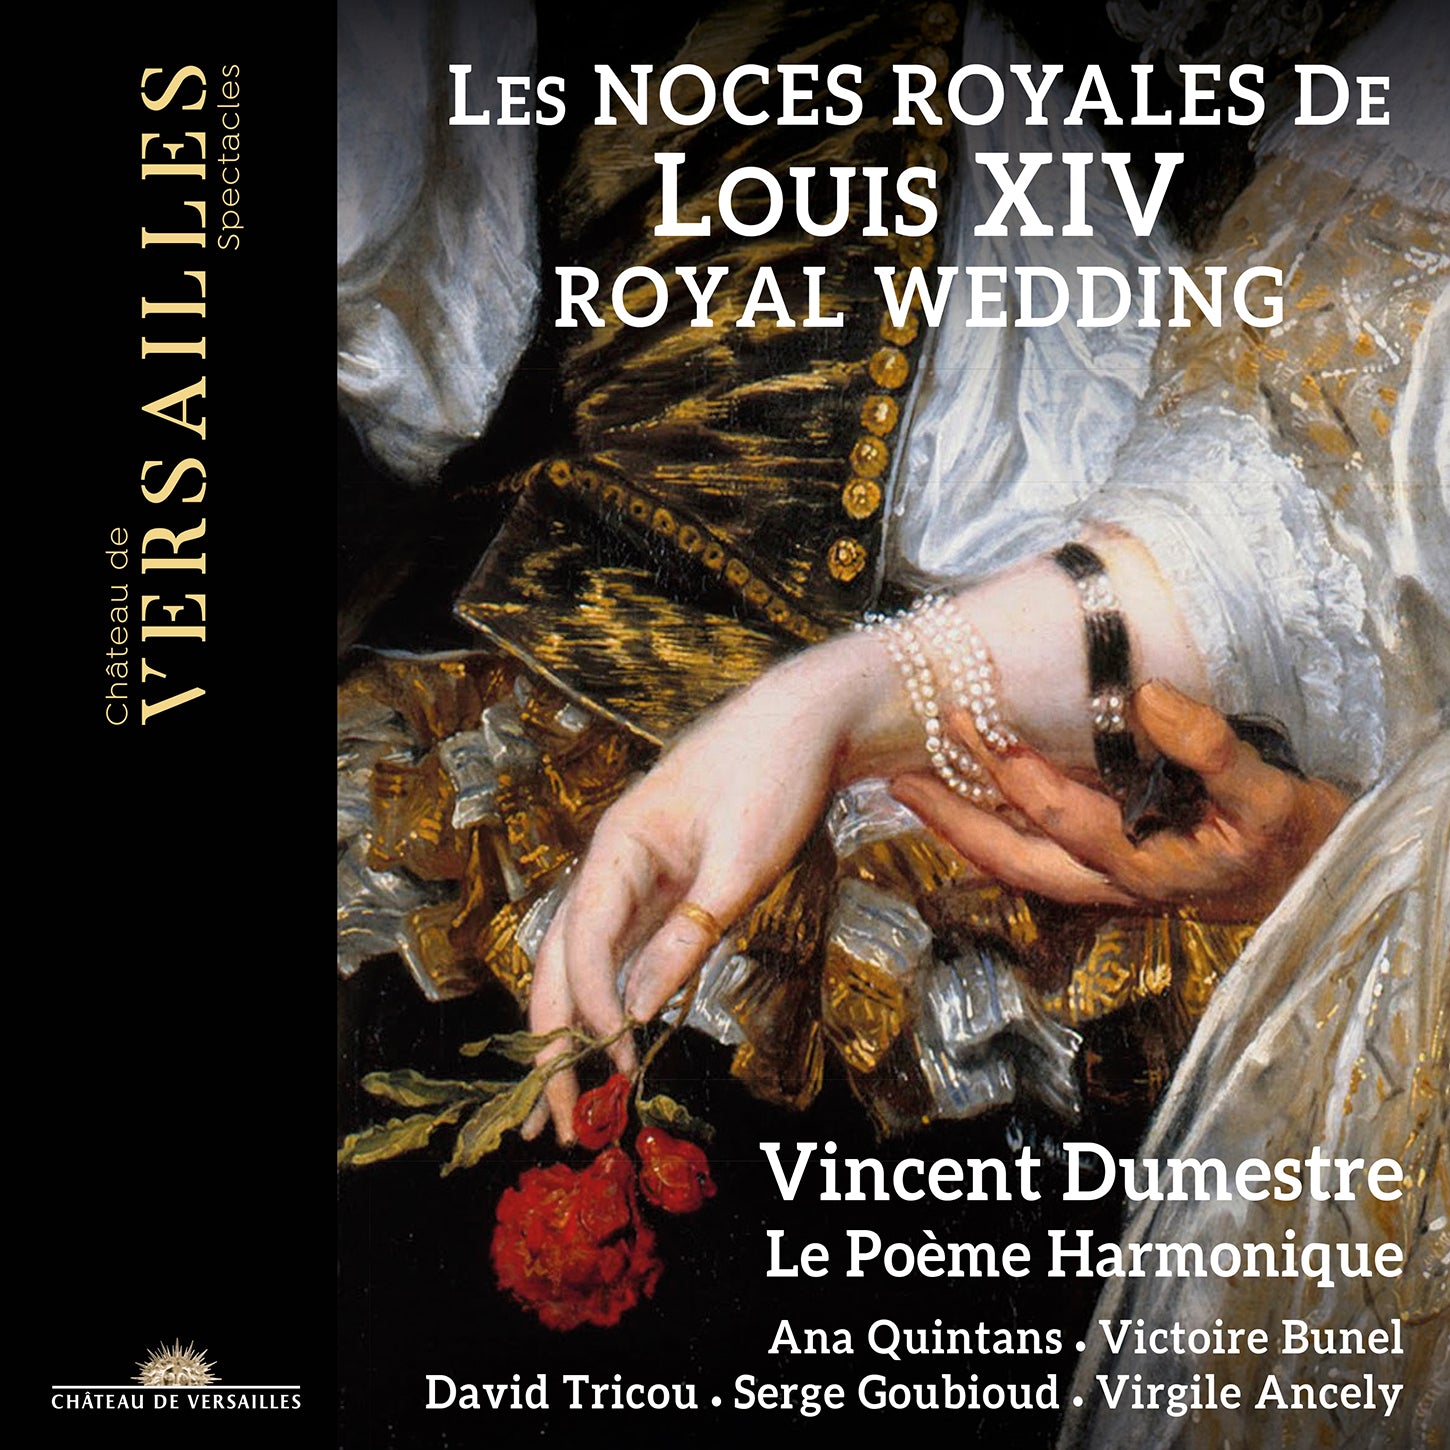 Cavalli, Lully et al.: The Royal Wedding of Louis XIV / Dumestre, Le Poème Harmonique, Choir of La Tempête